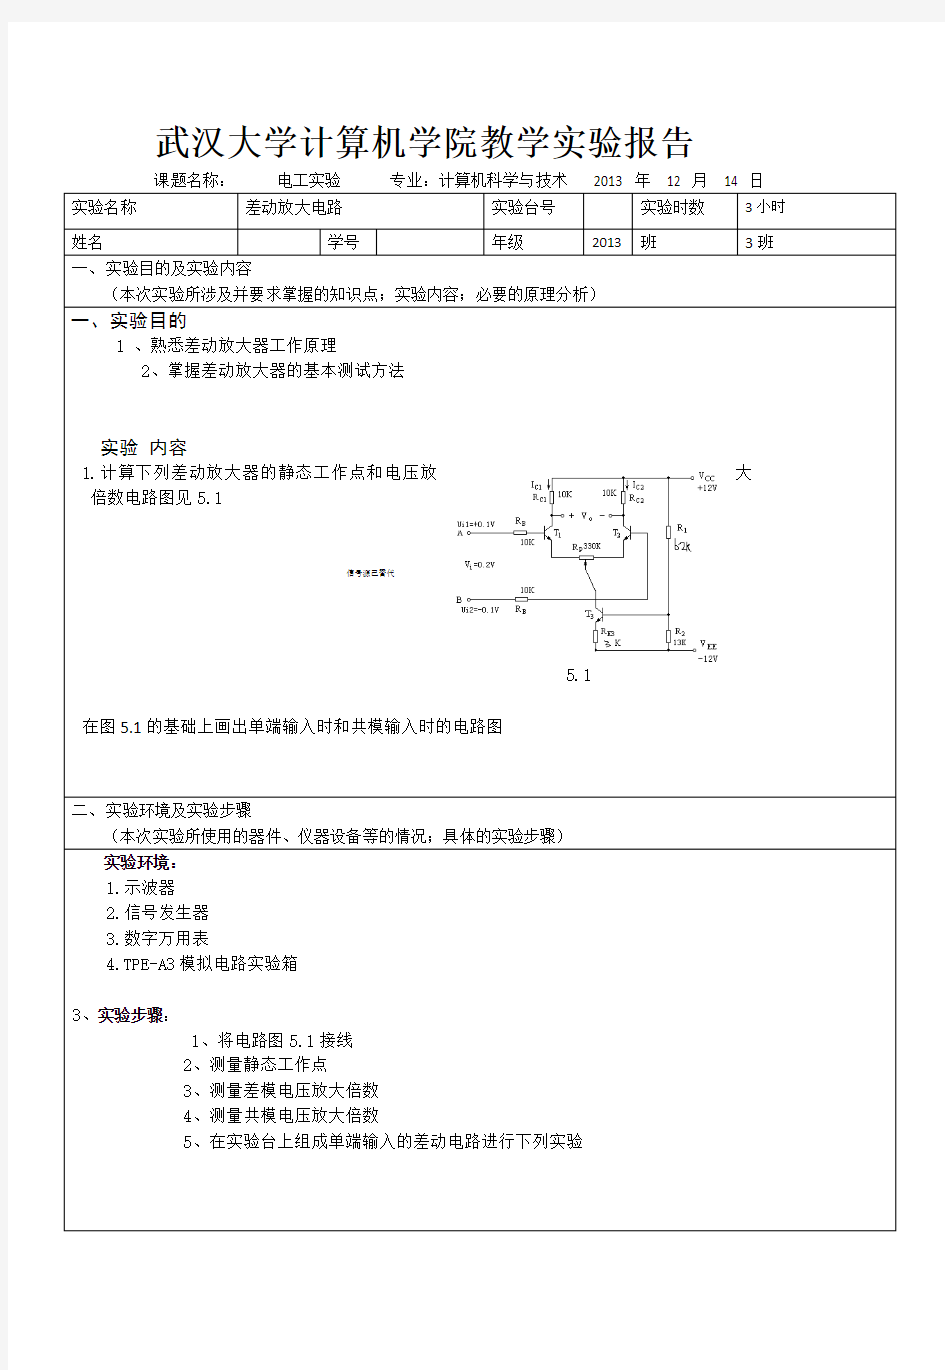 武汉大学差动放大电路实验报告